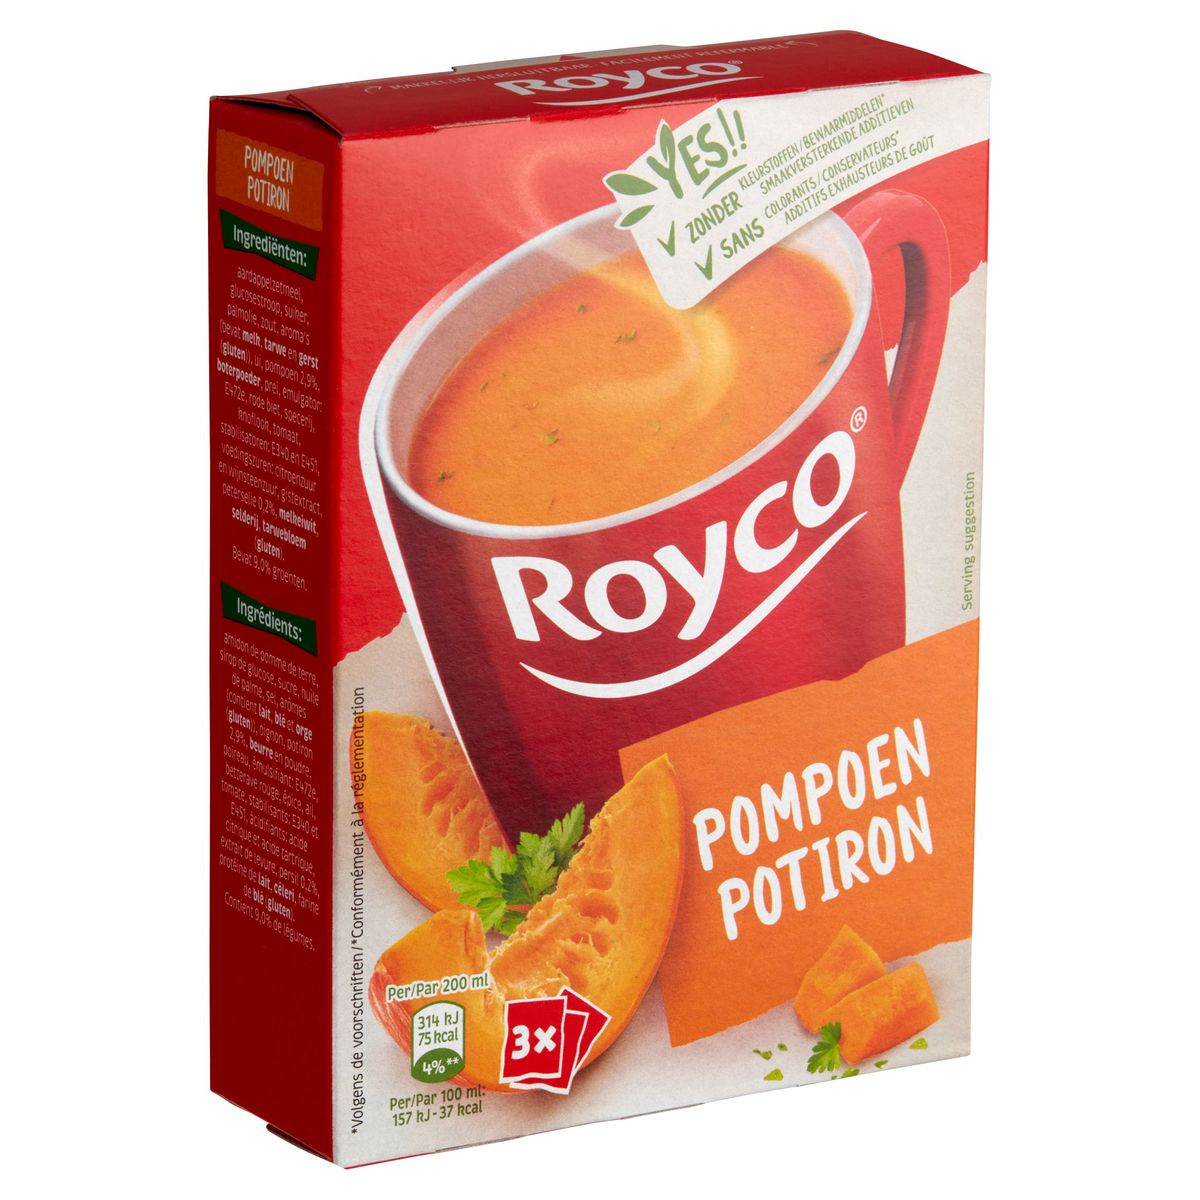 Royco Pompoen 3 x 16.6 g